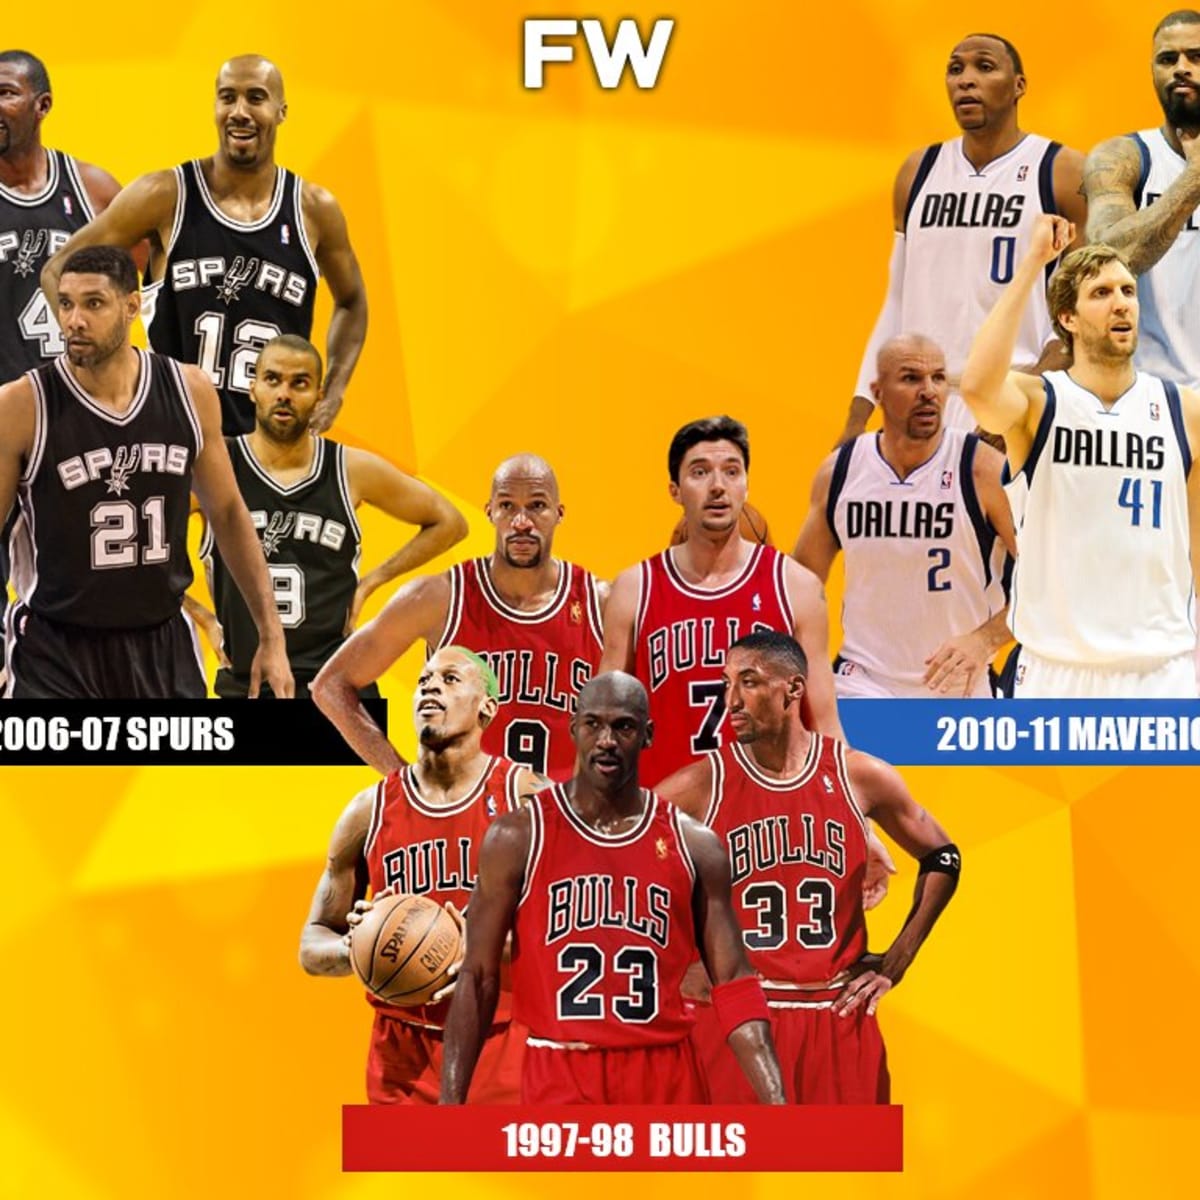 Chicago Bulls 1997-98 roster